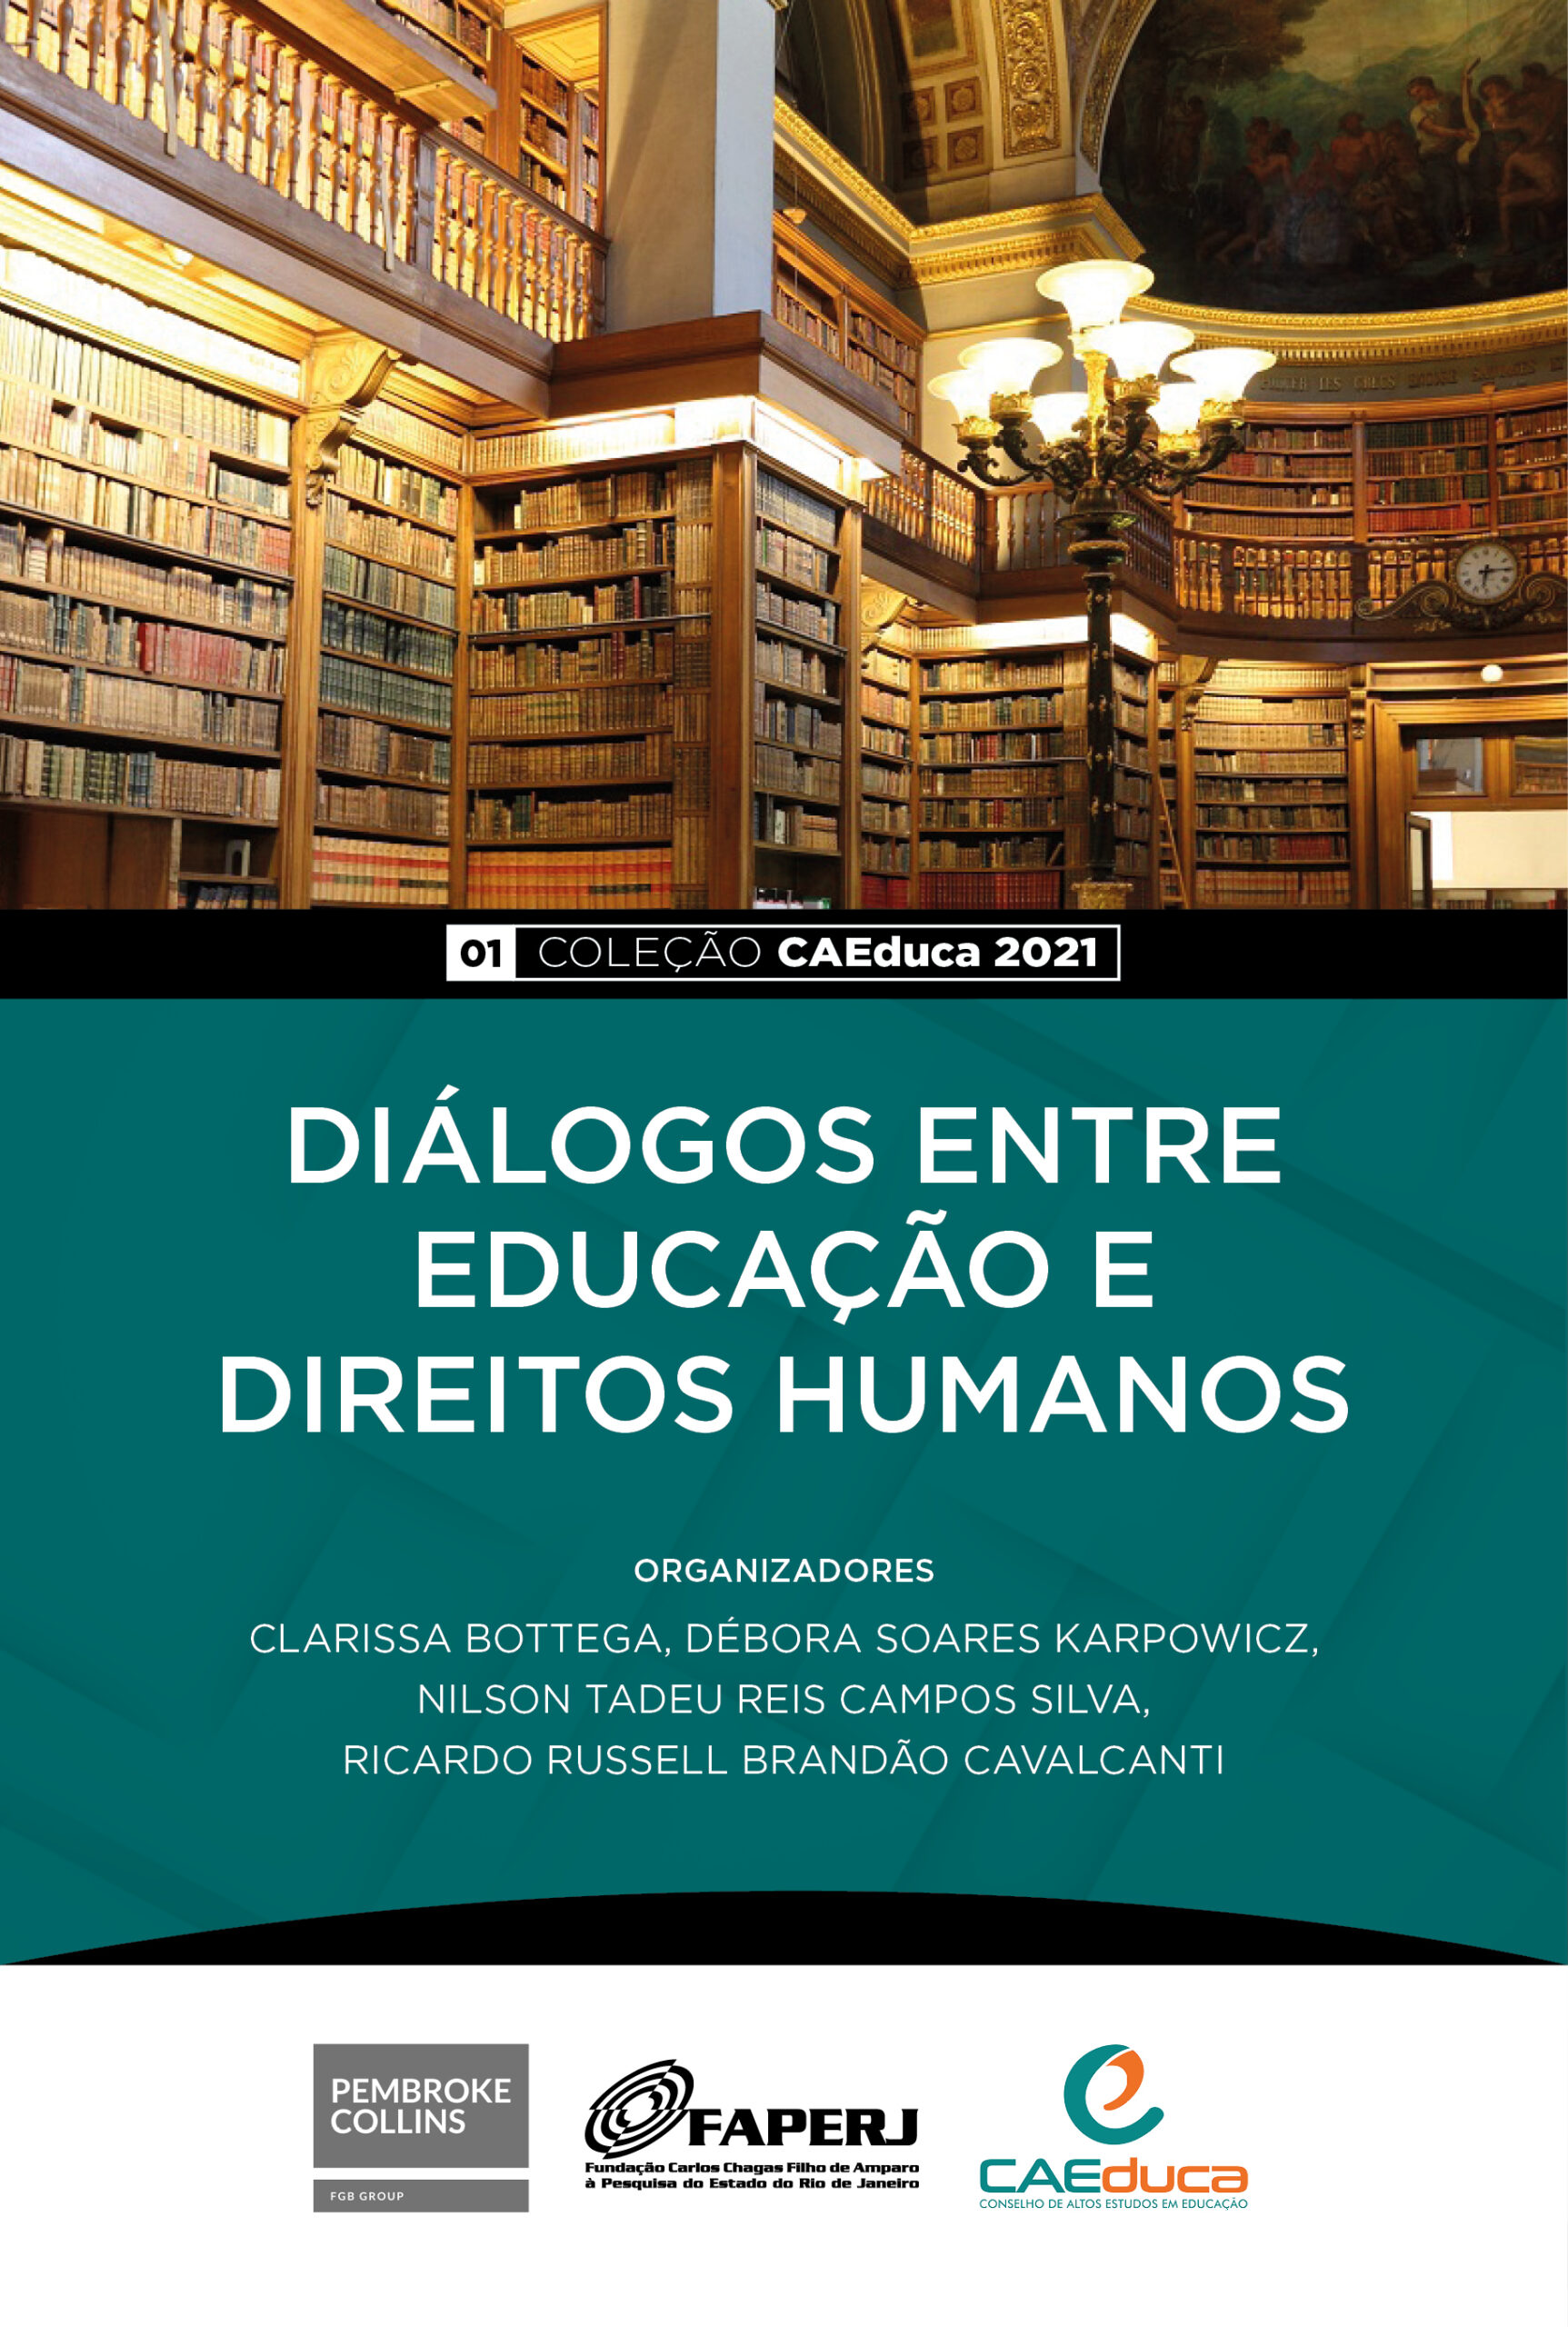 CAEDUCA-01- 2021-Diálogos entre Educação e Direitos Humanos_CAED-JUS